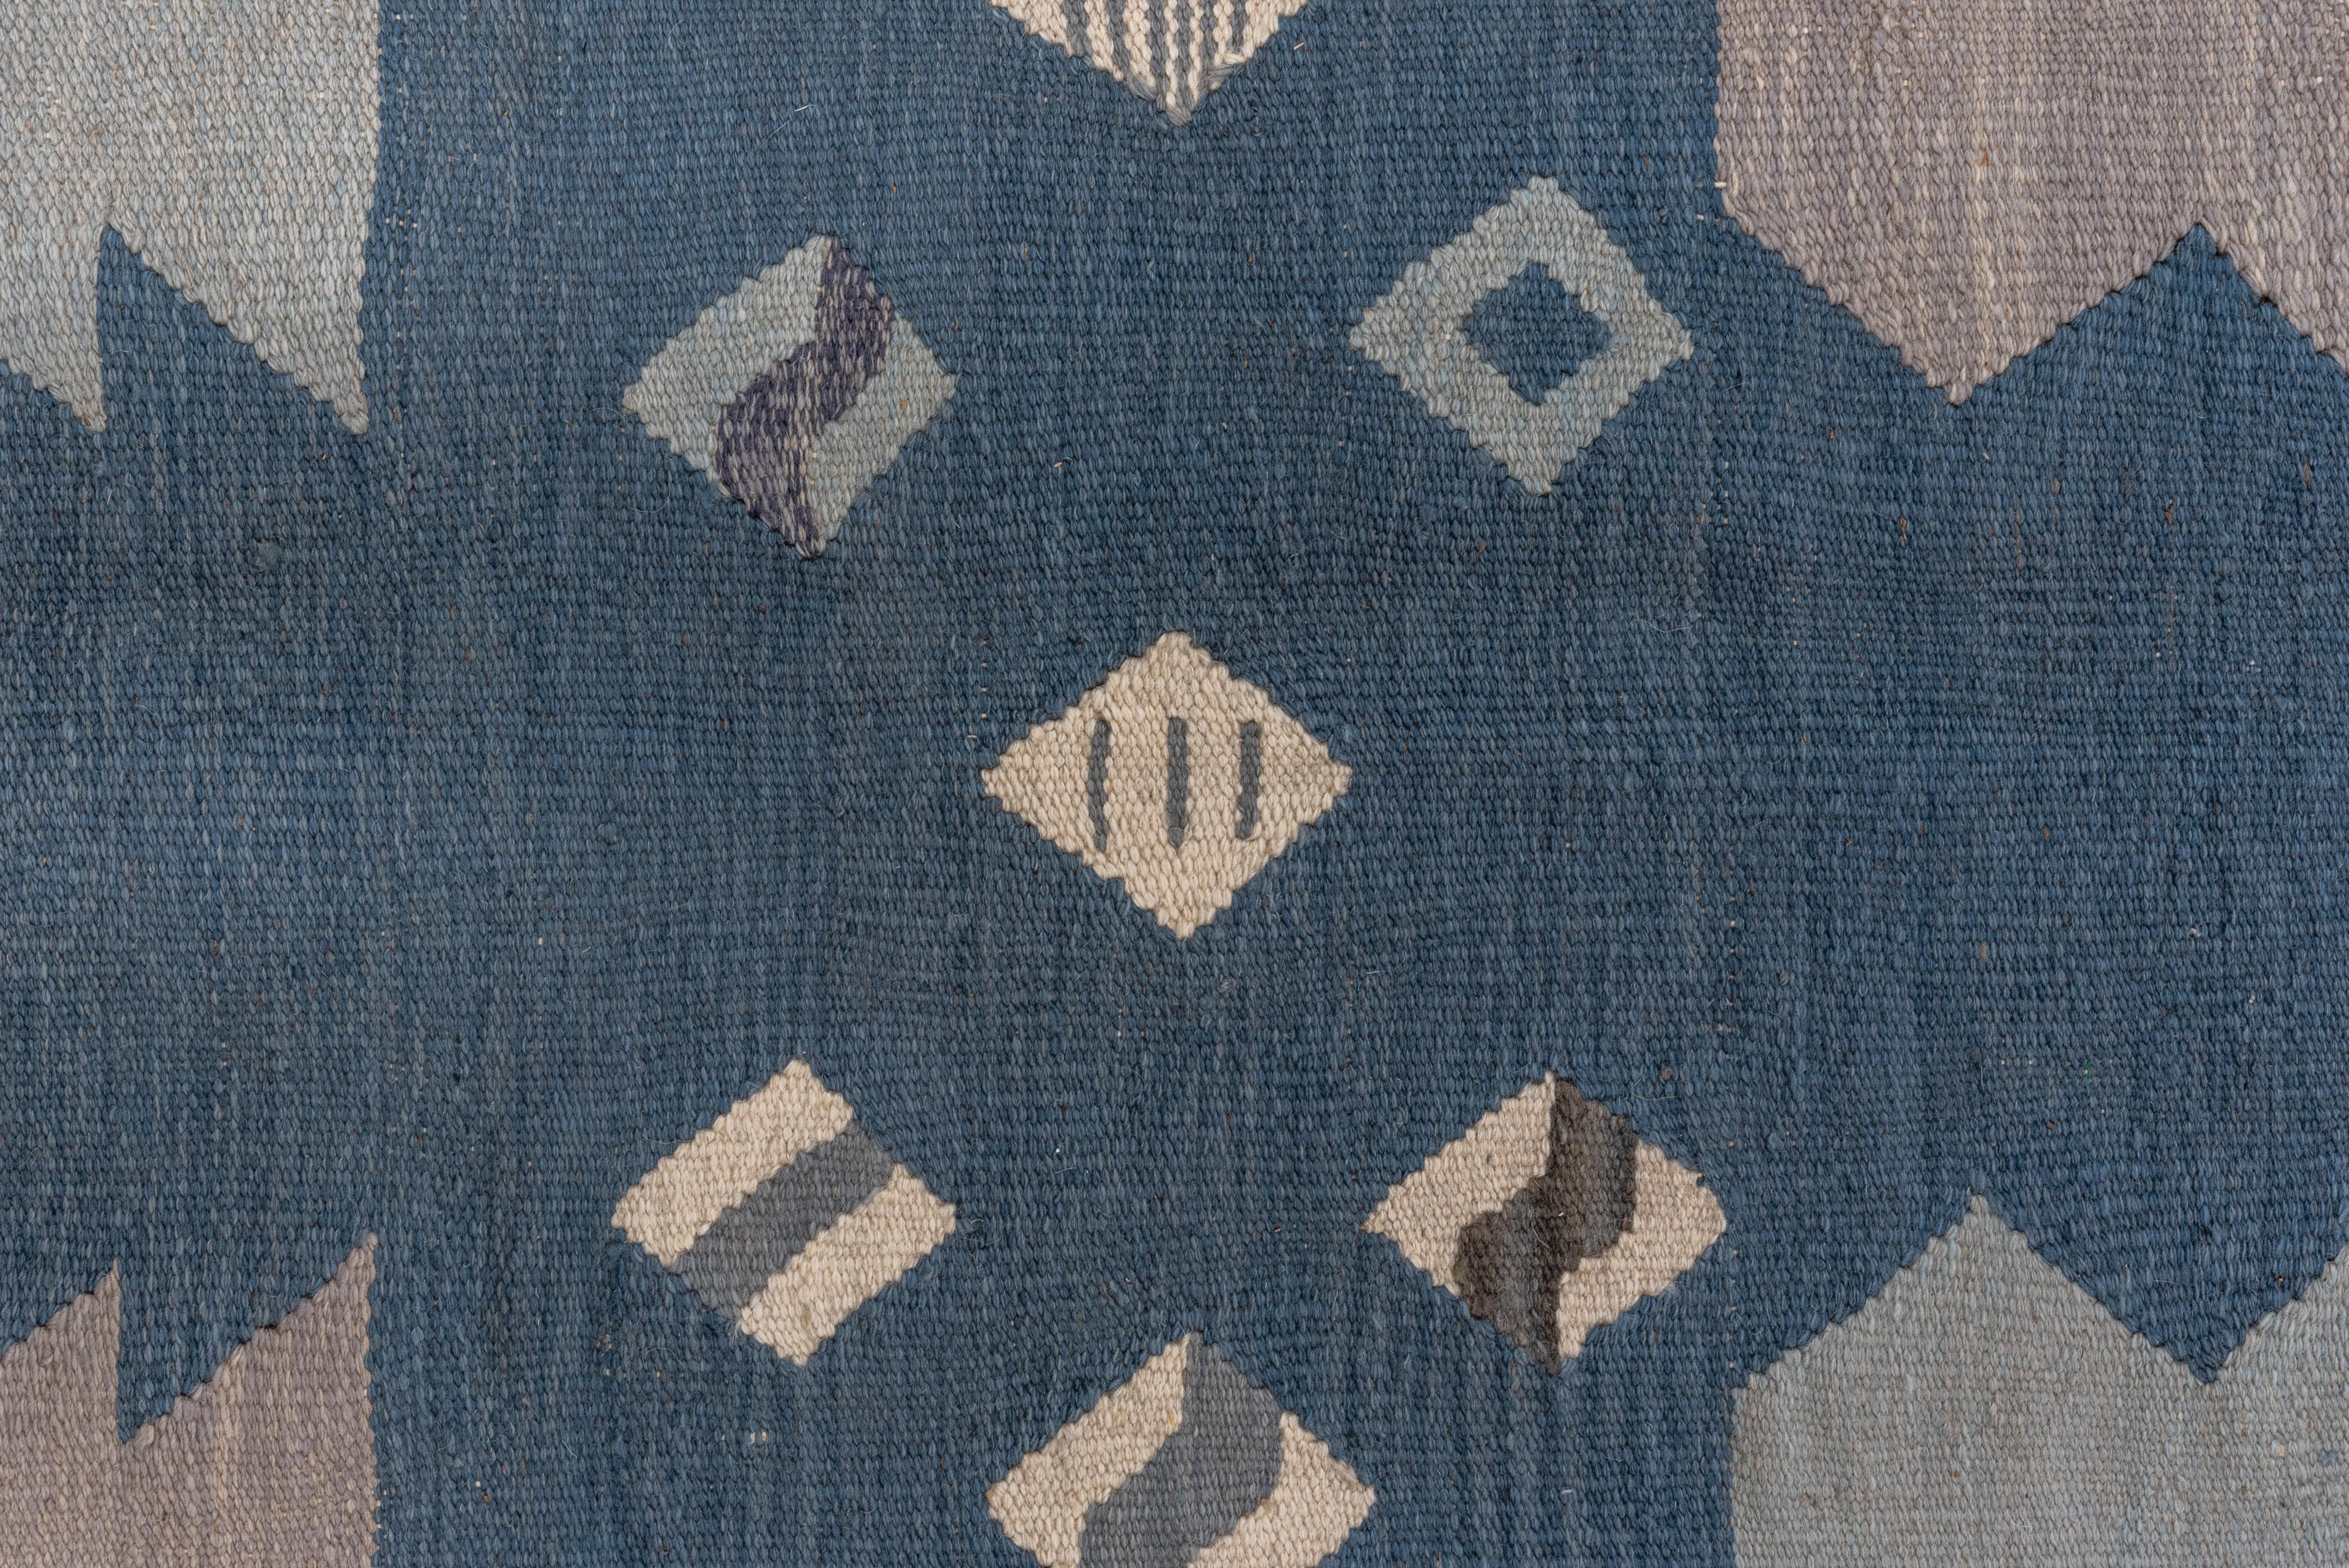 Contemporary Abstract Blue & Gray Scandinavian Design Rug